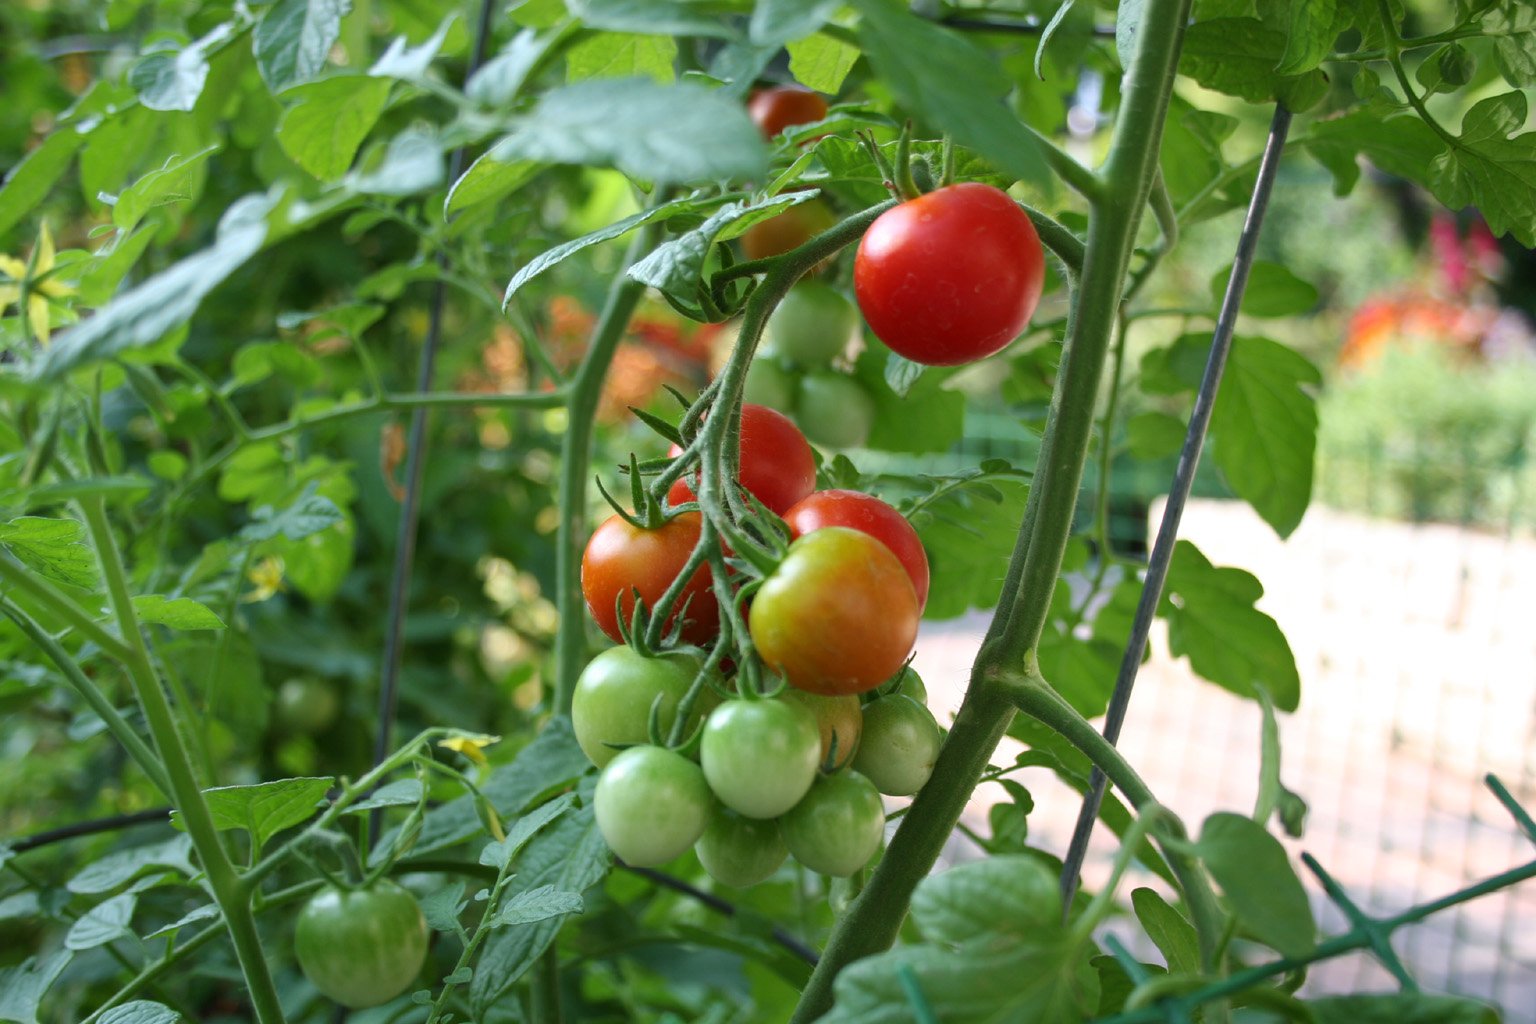 Schoolyard garden tomatoes